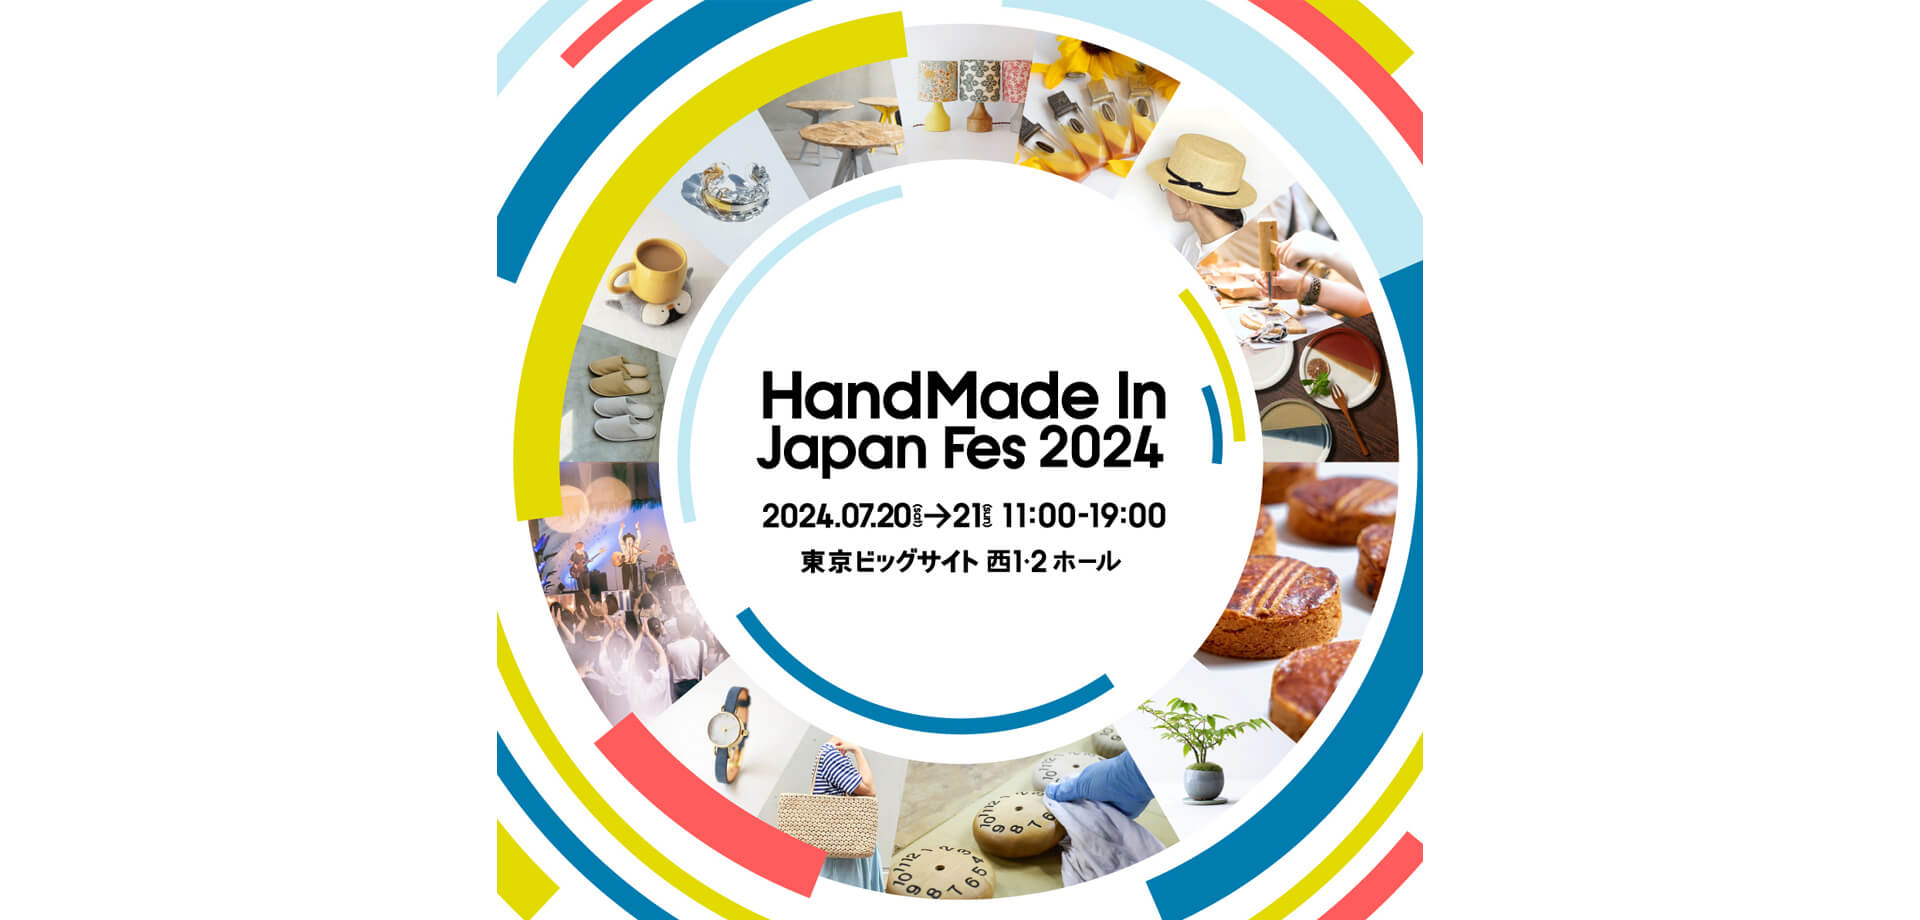 ハンドメイドインジャパンフェス2024 バナー